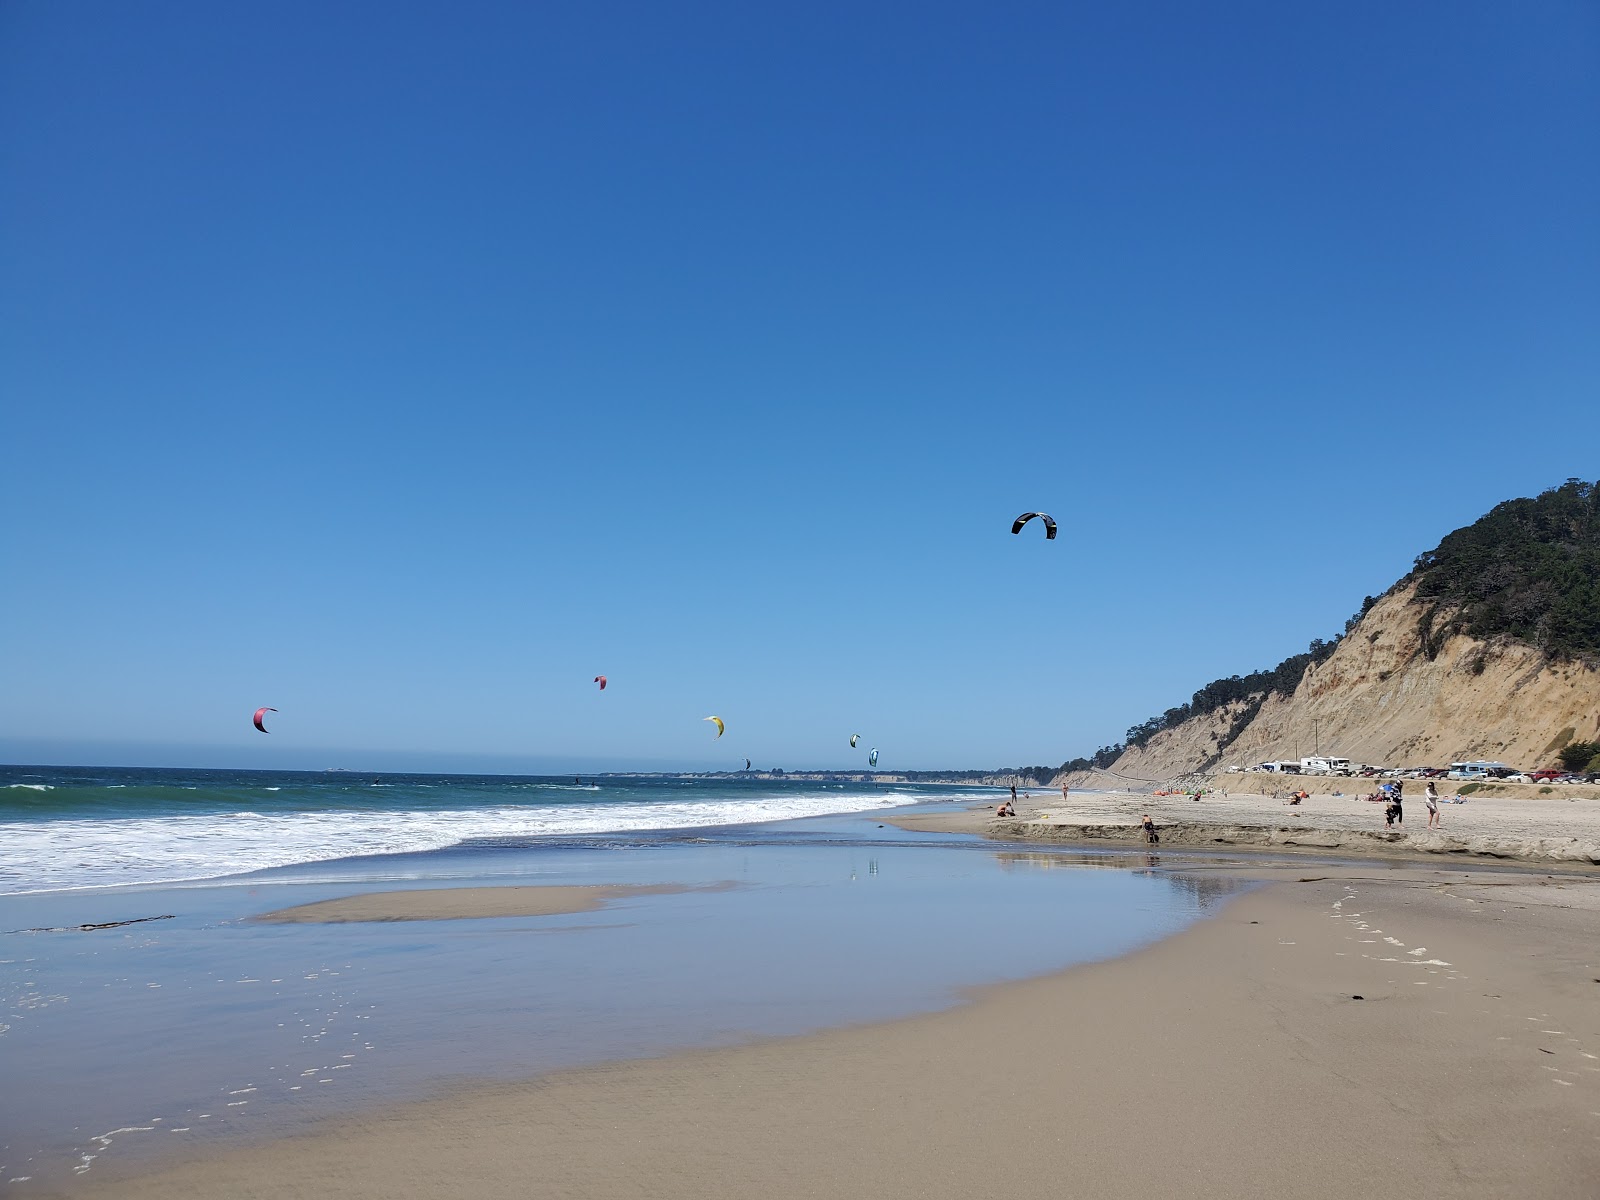 Fotografie cu Monterey beach - locul popular printre cunoscătorii de relaxare